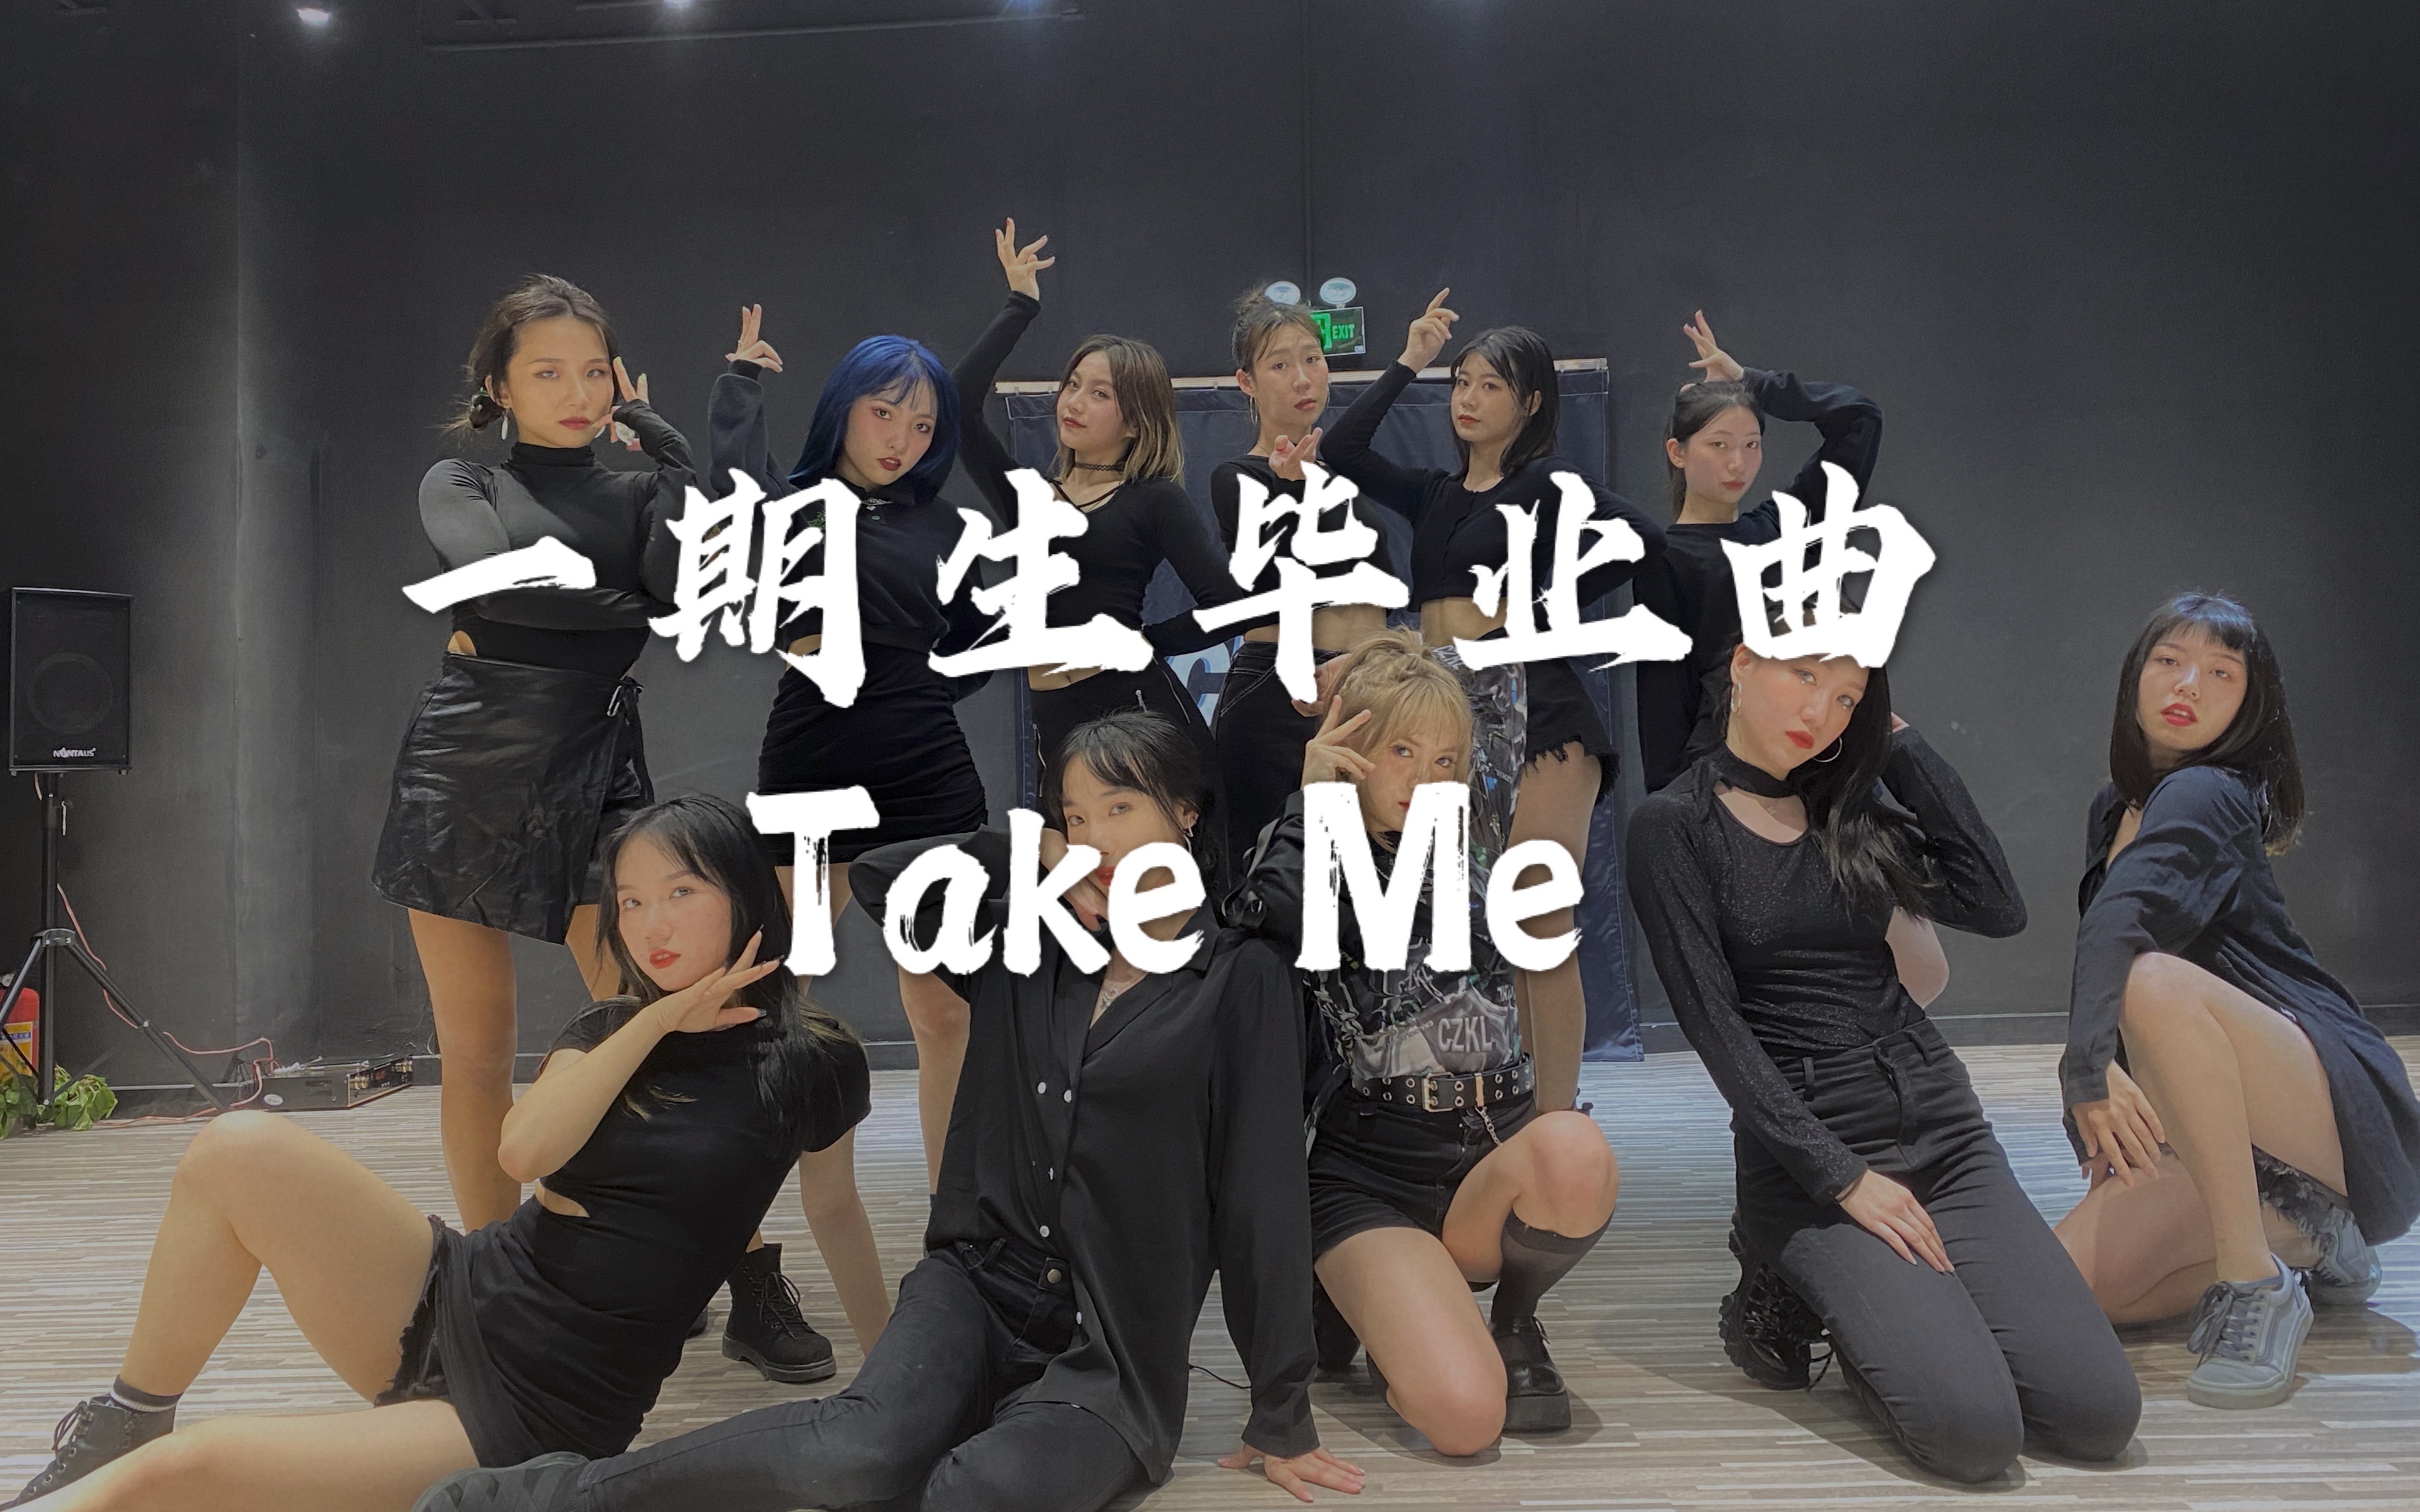 【SNH48】TeamSII 一期生毕业曲《take me》原版编舞流出 一期一会